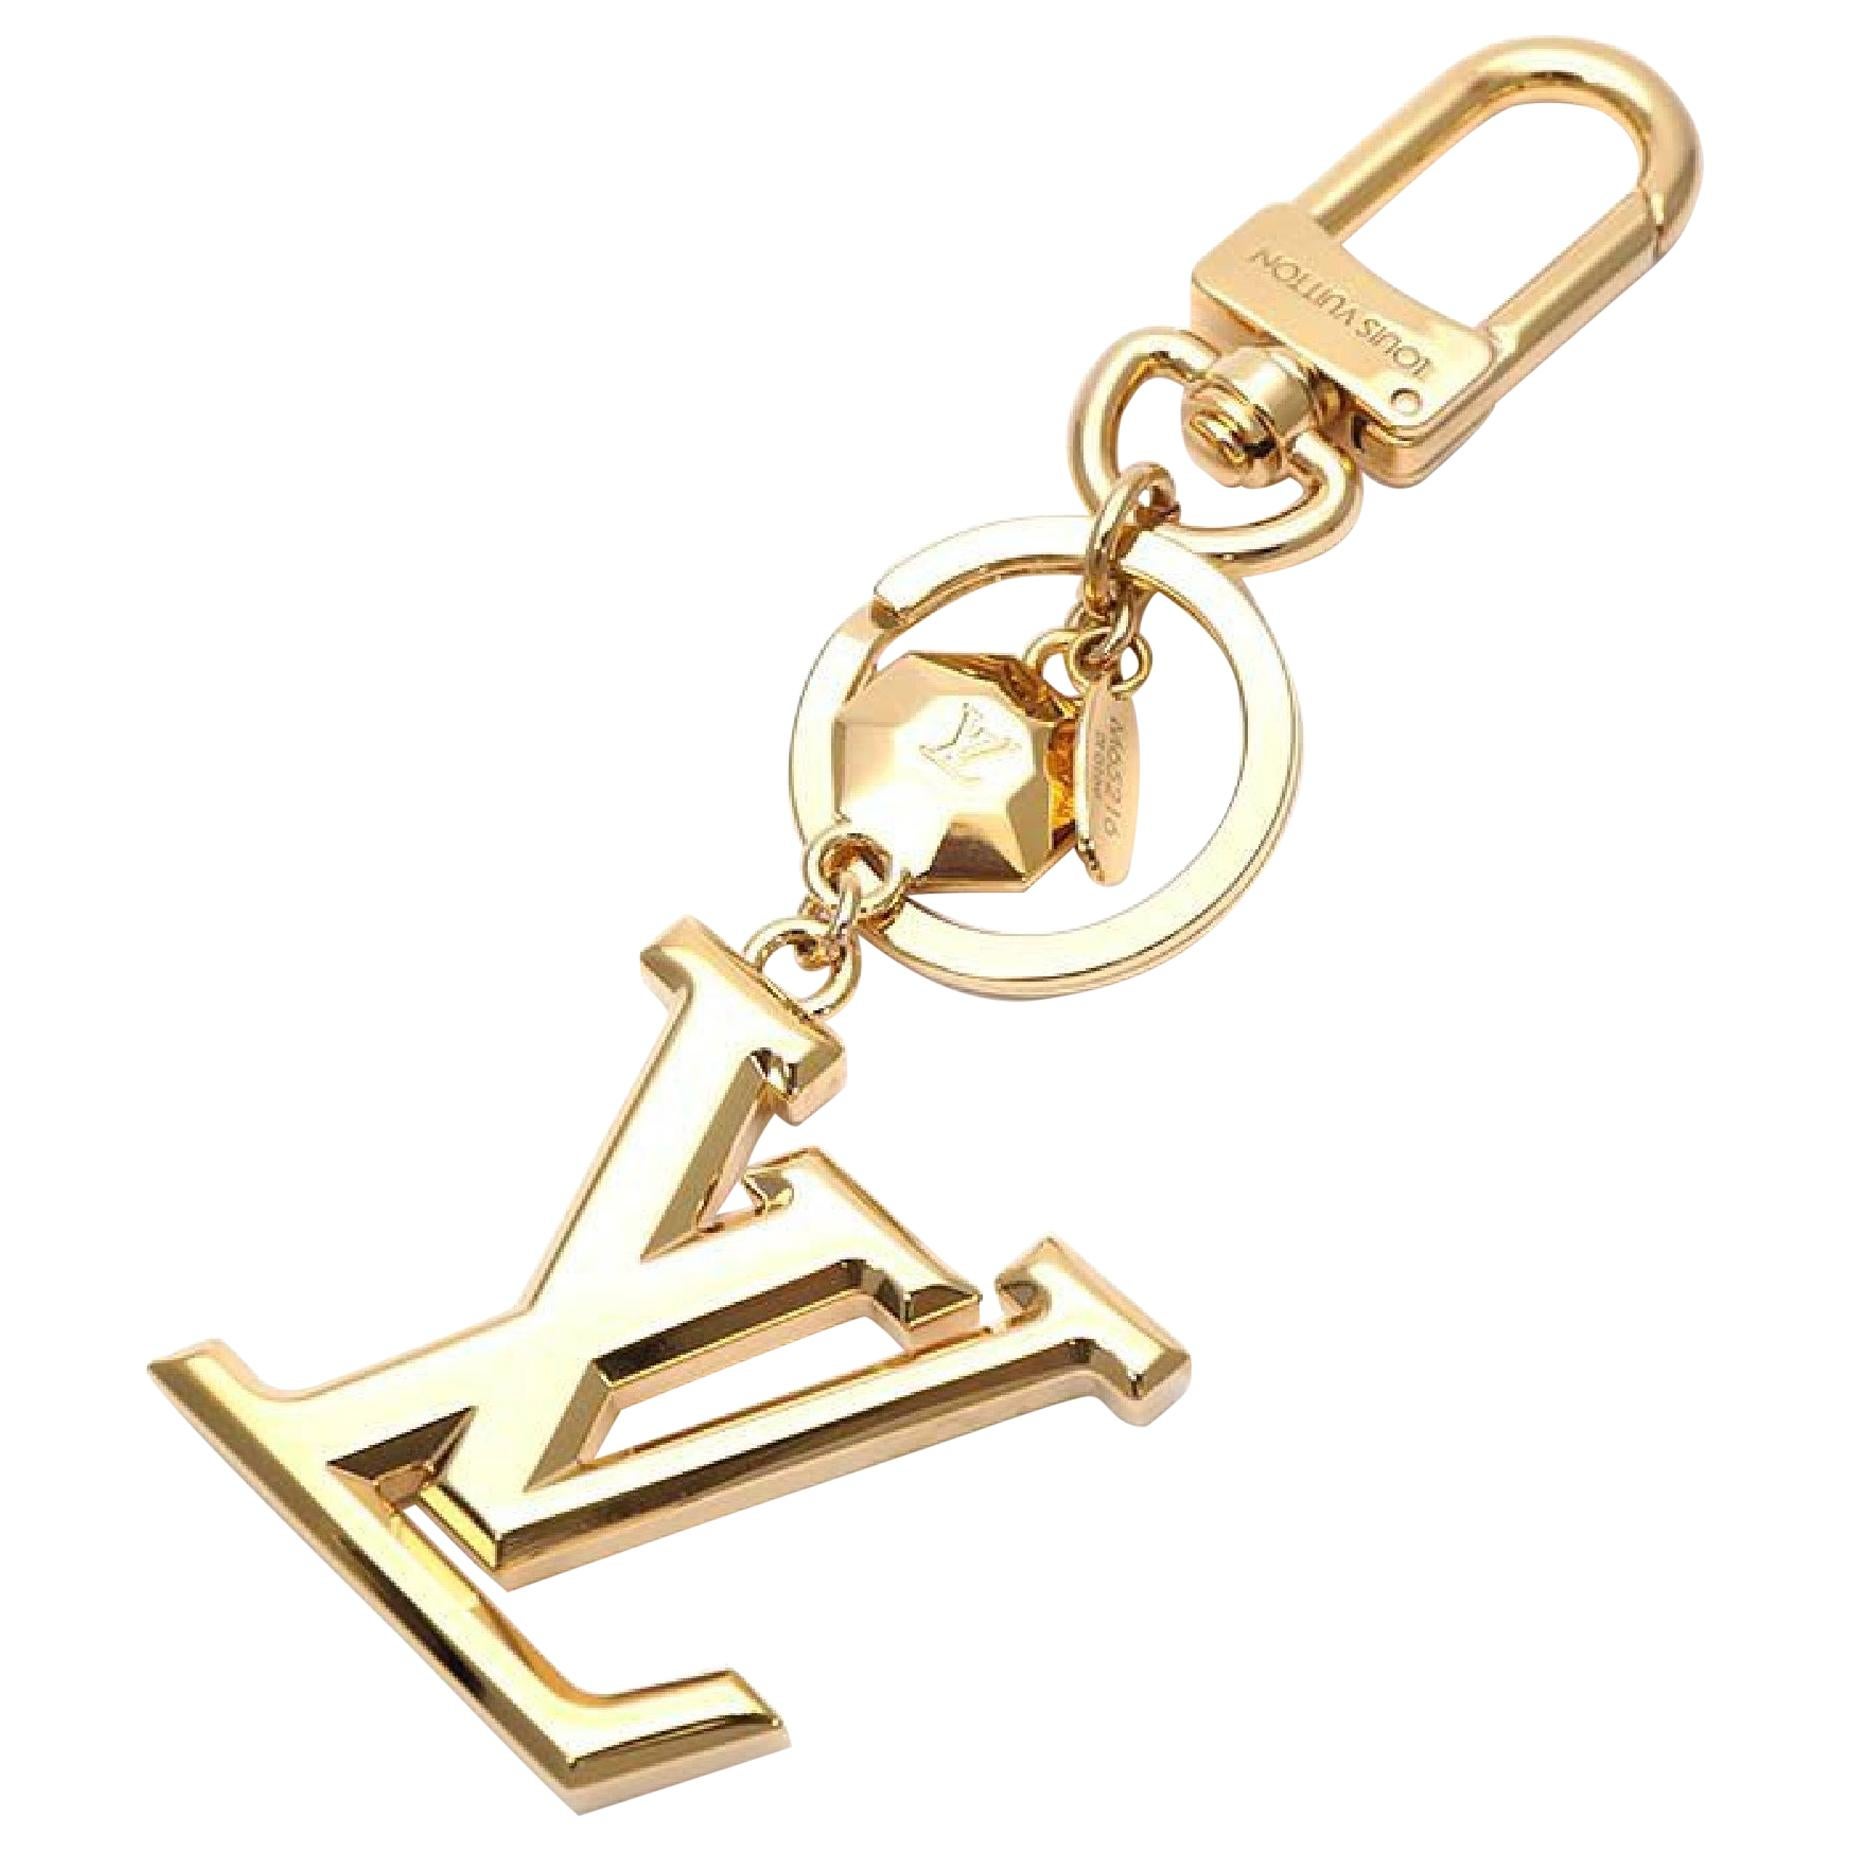 LOUIS VUITTON poruto Cle LV facet charm unisex key holder M65216 gold ...